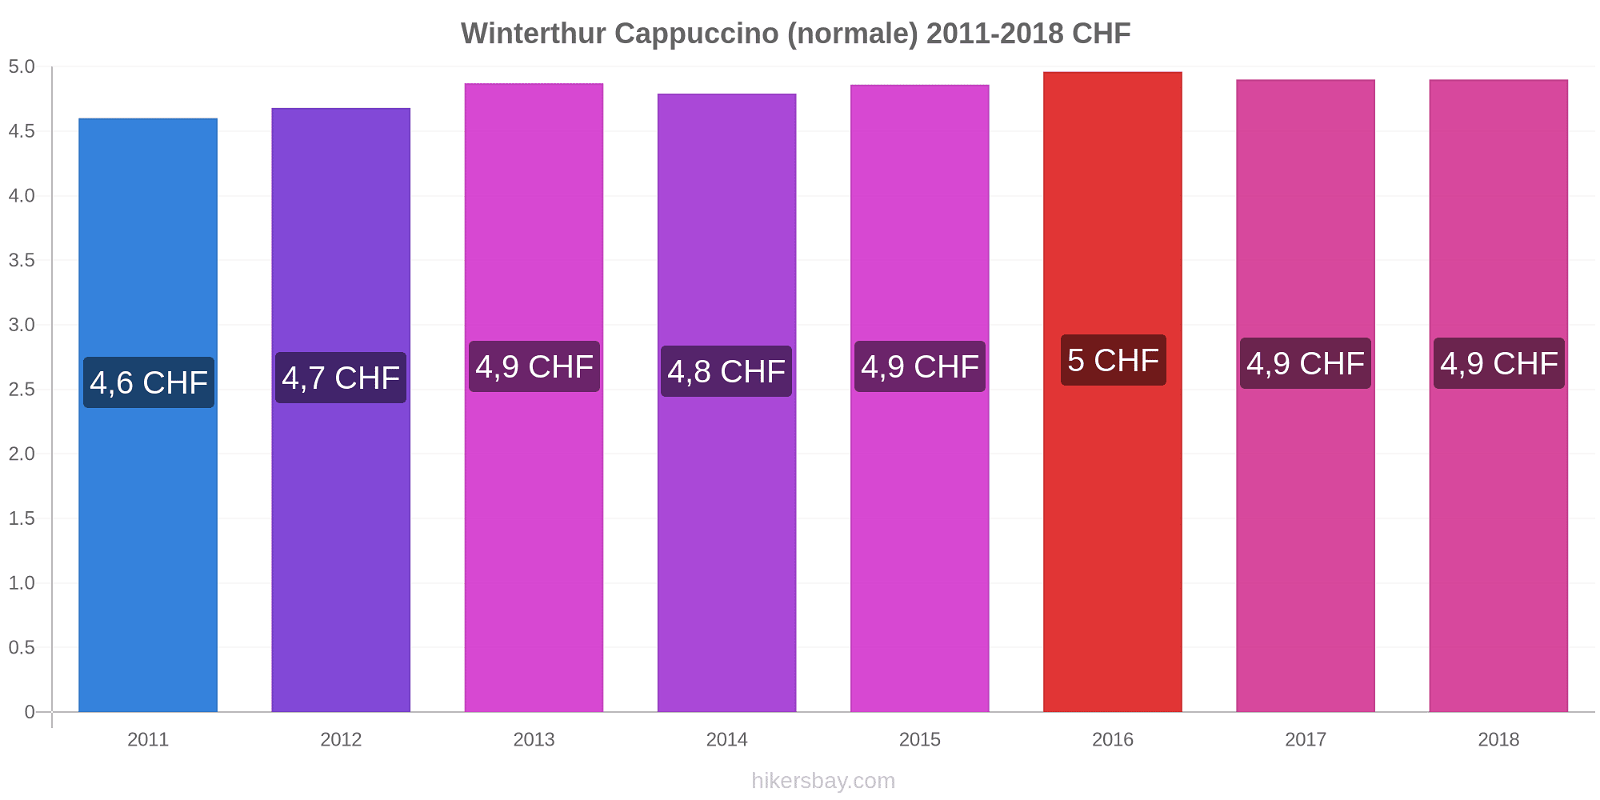 Winterthur variazioni di prezzo Cappuccino (normale) hikersbay.com